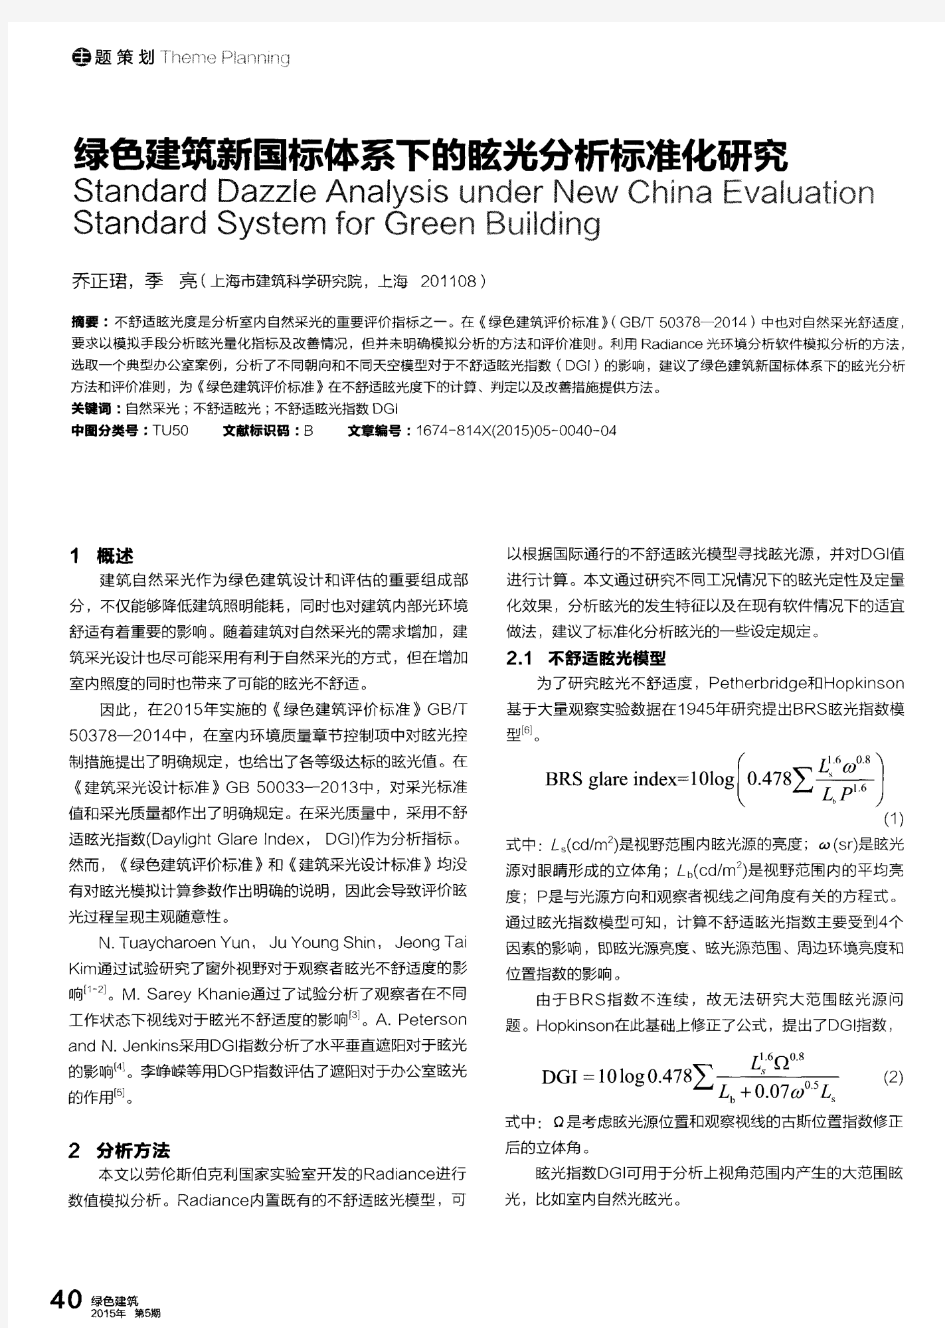 绿色建筑新国标体系下的眩光分析标准化研究